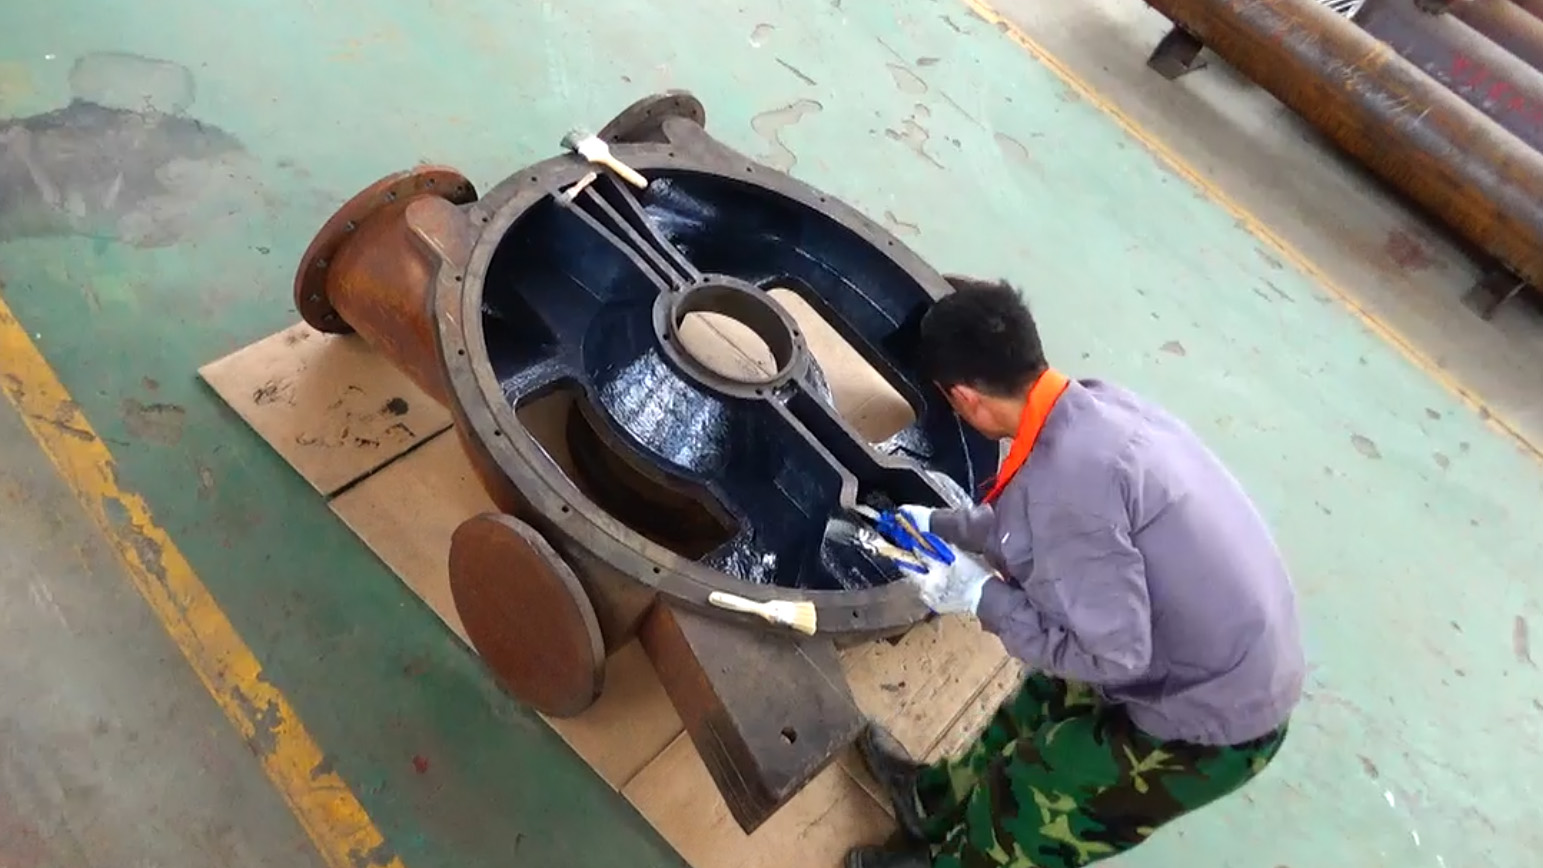 我公司与湖北省神珑泵业有限责任公司签订两台水环真空泵碳化硅耐磨防腐涂层修复合同